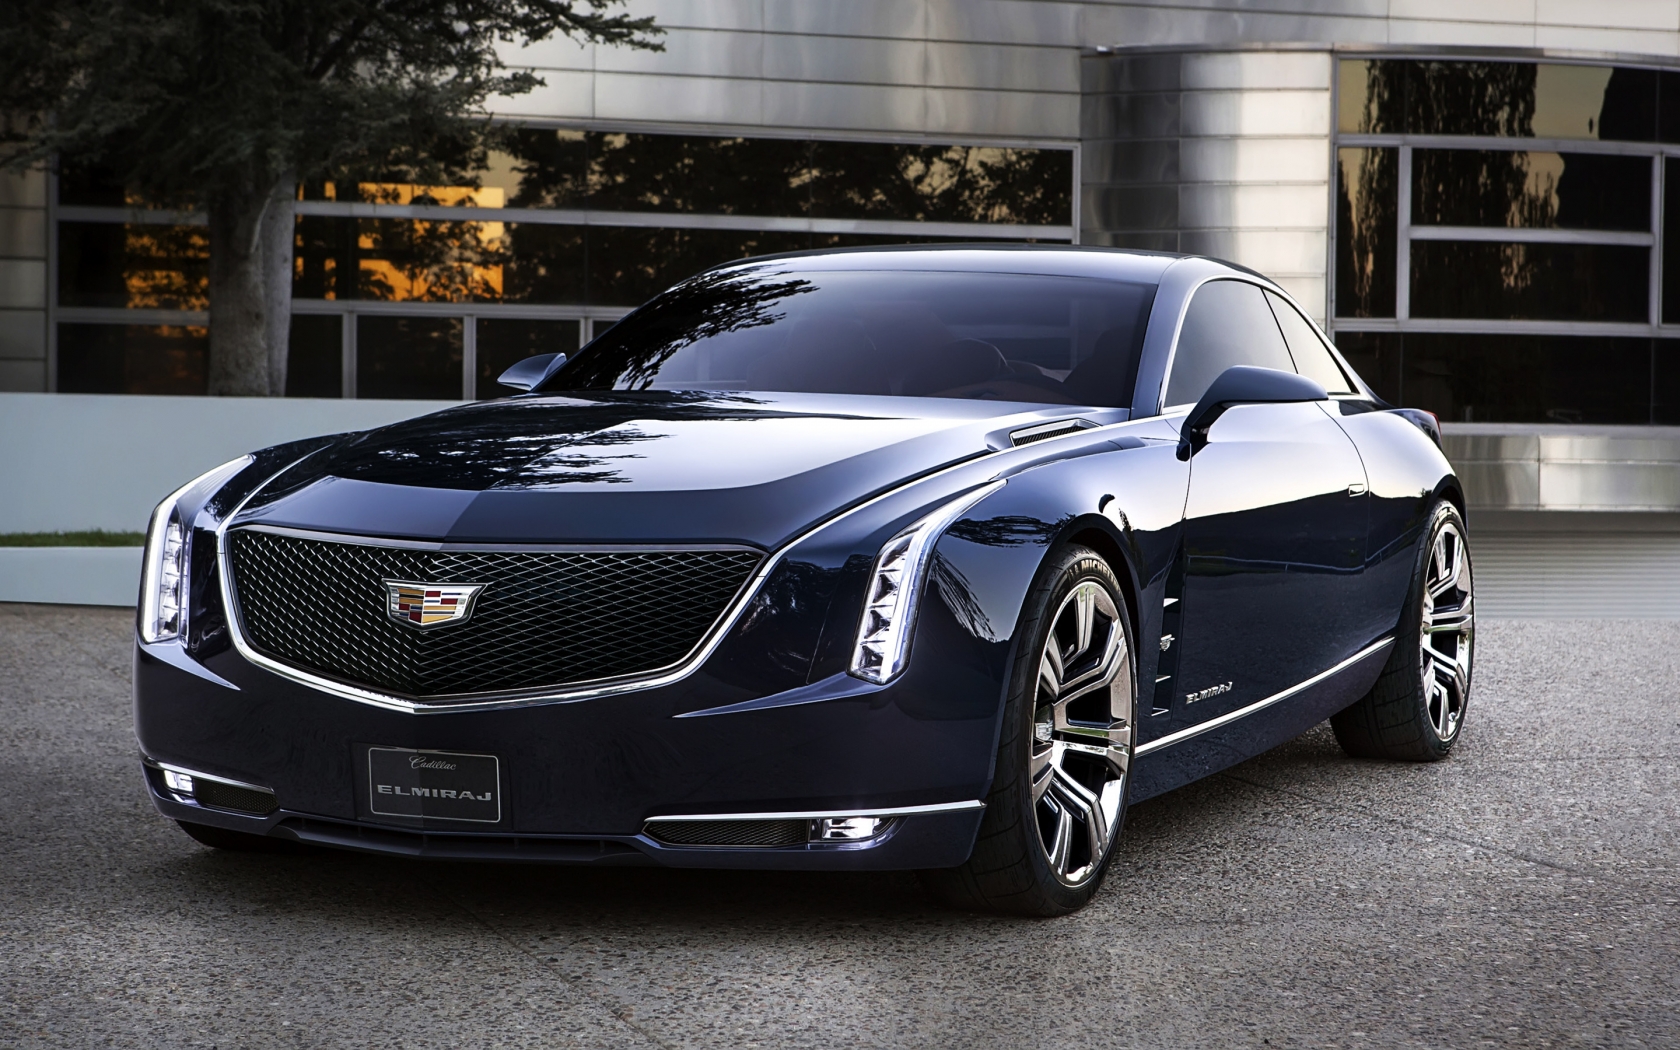 2013 Cadillac Elmiraj Concept for 1680 x 1050 widescreen resolution